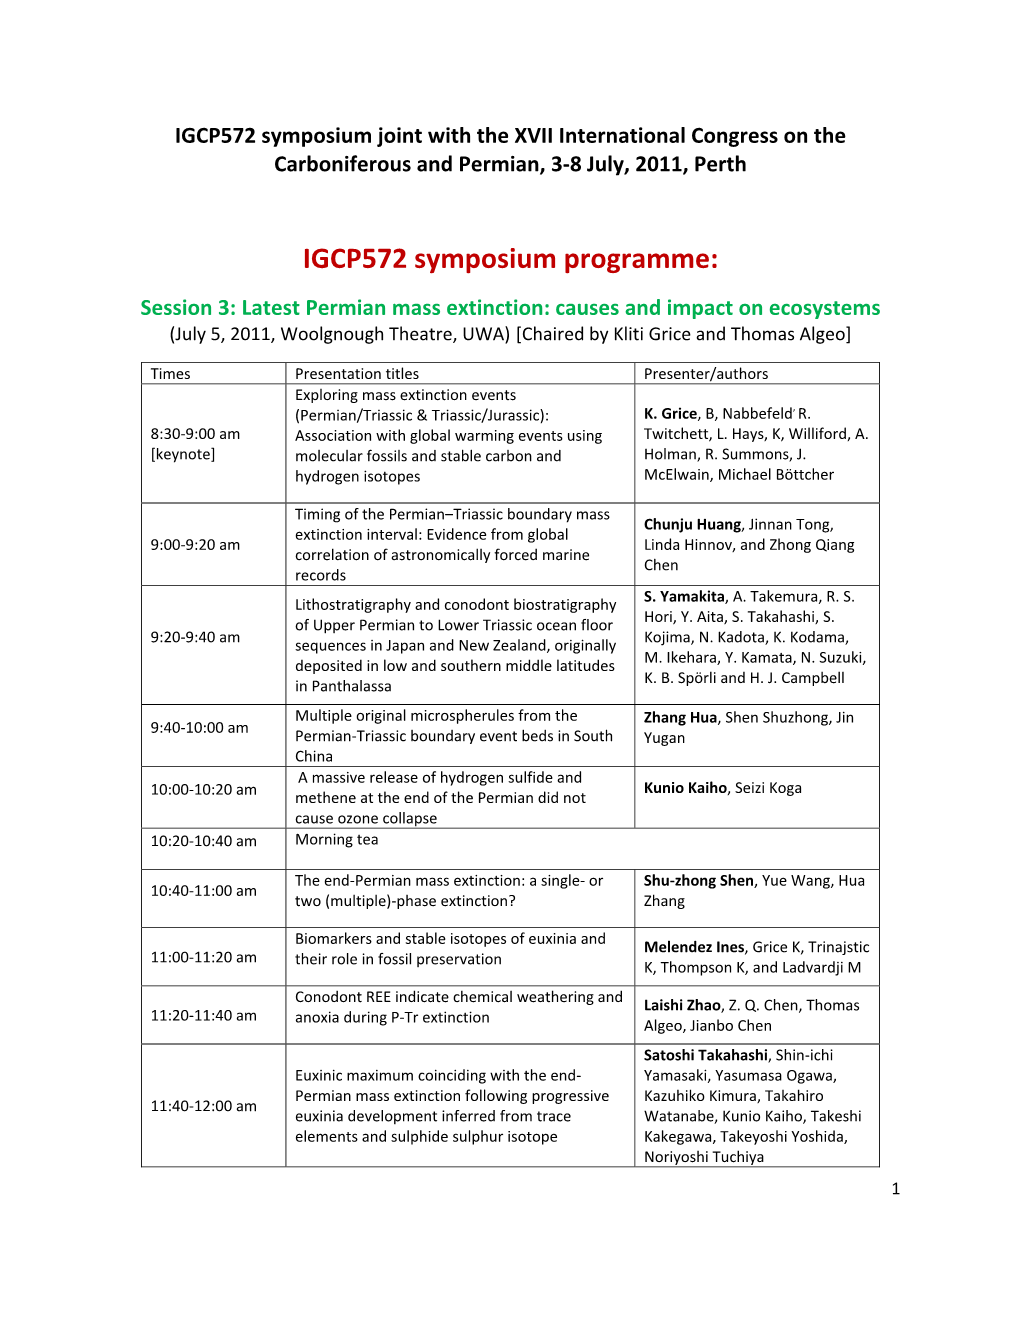 IGCP572 Symposium Programme